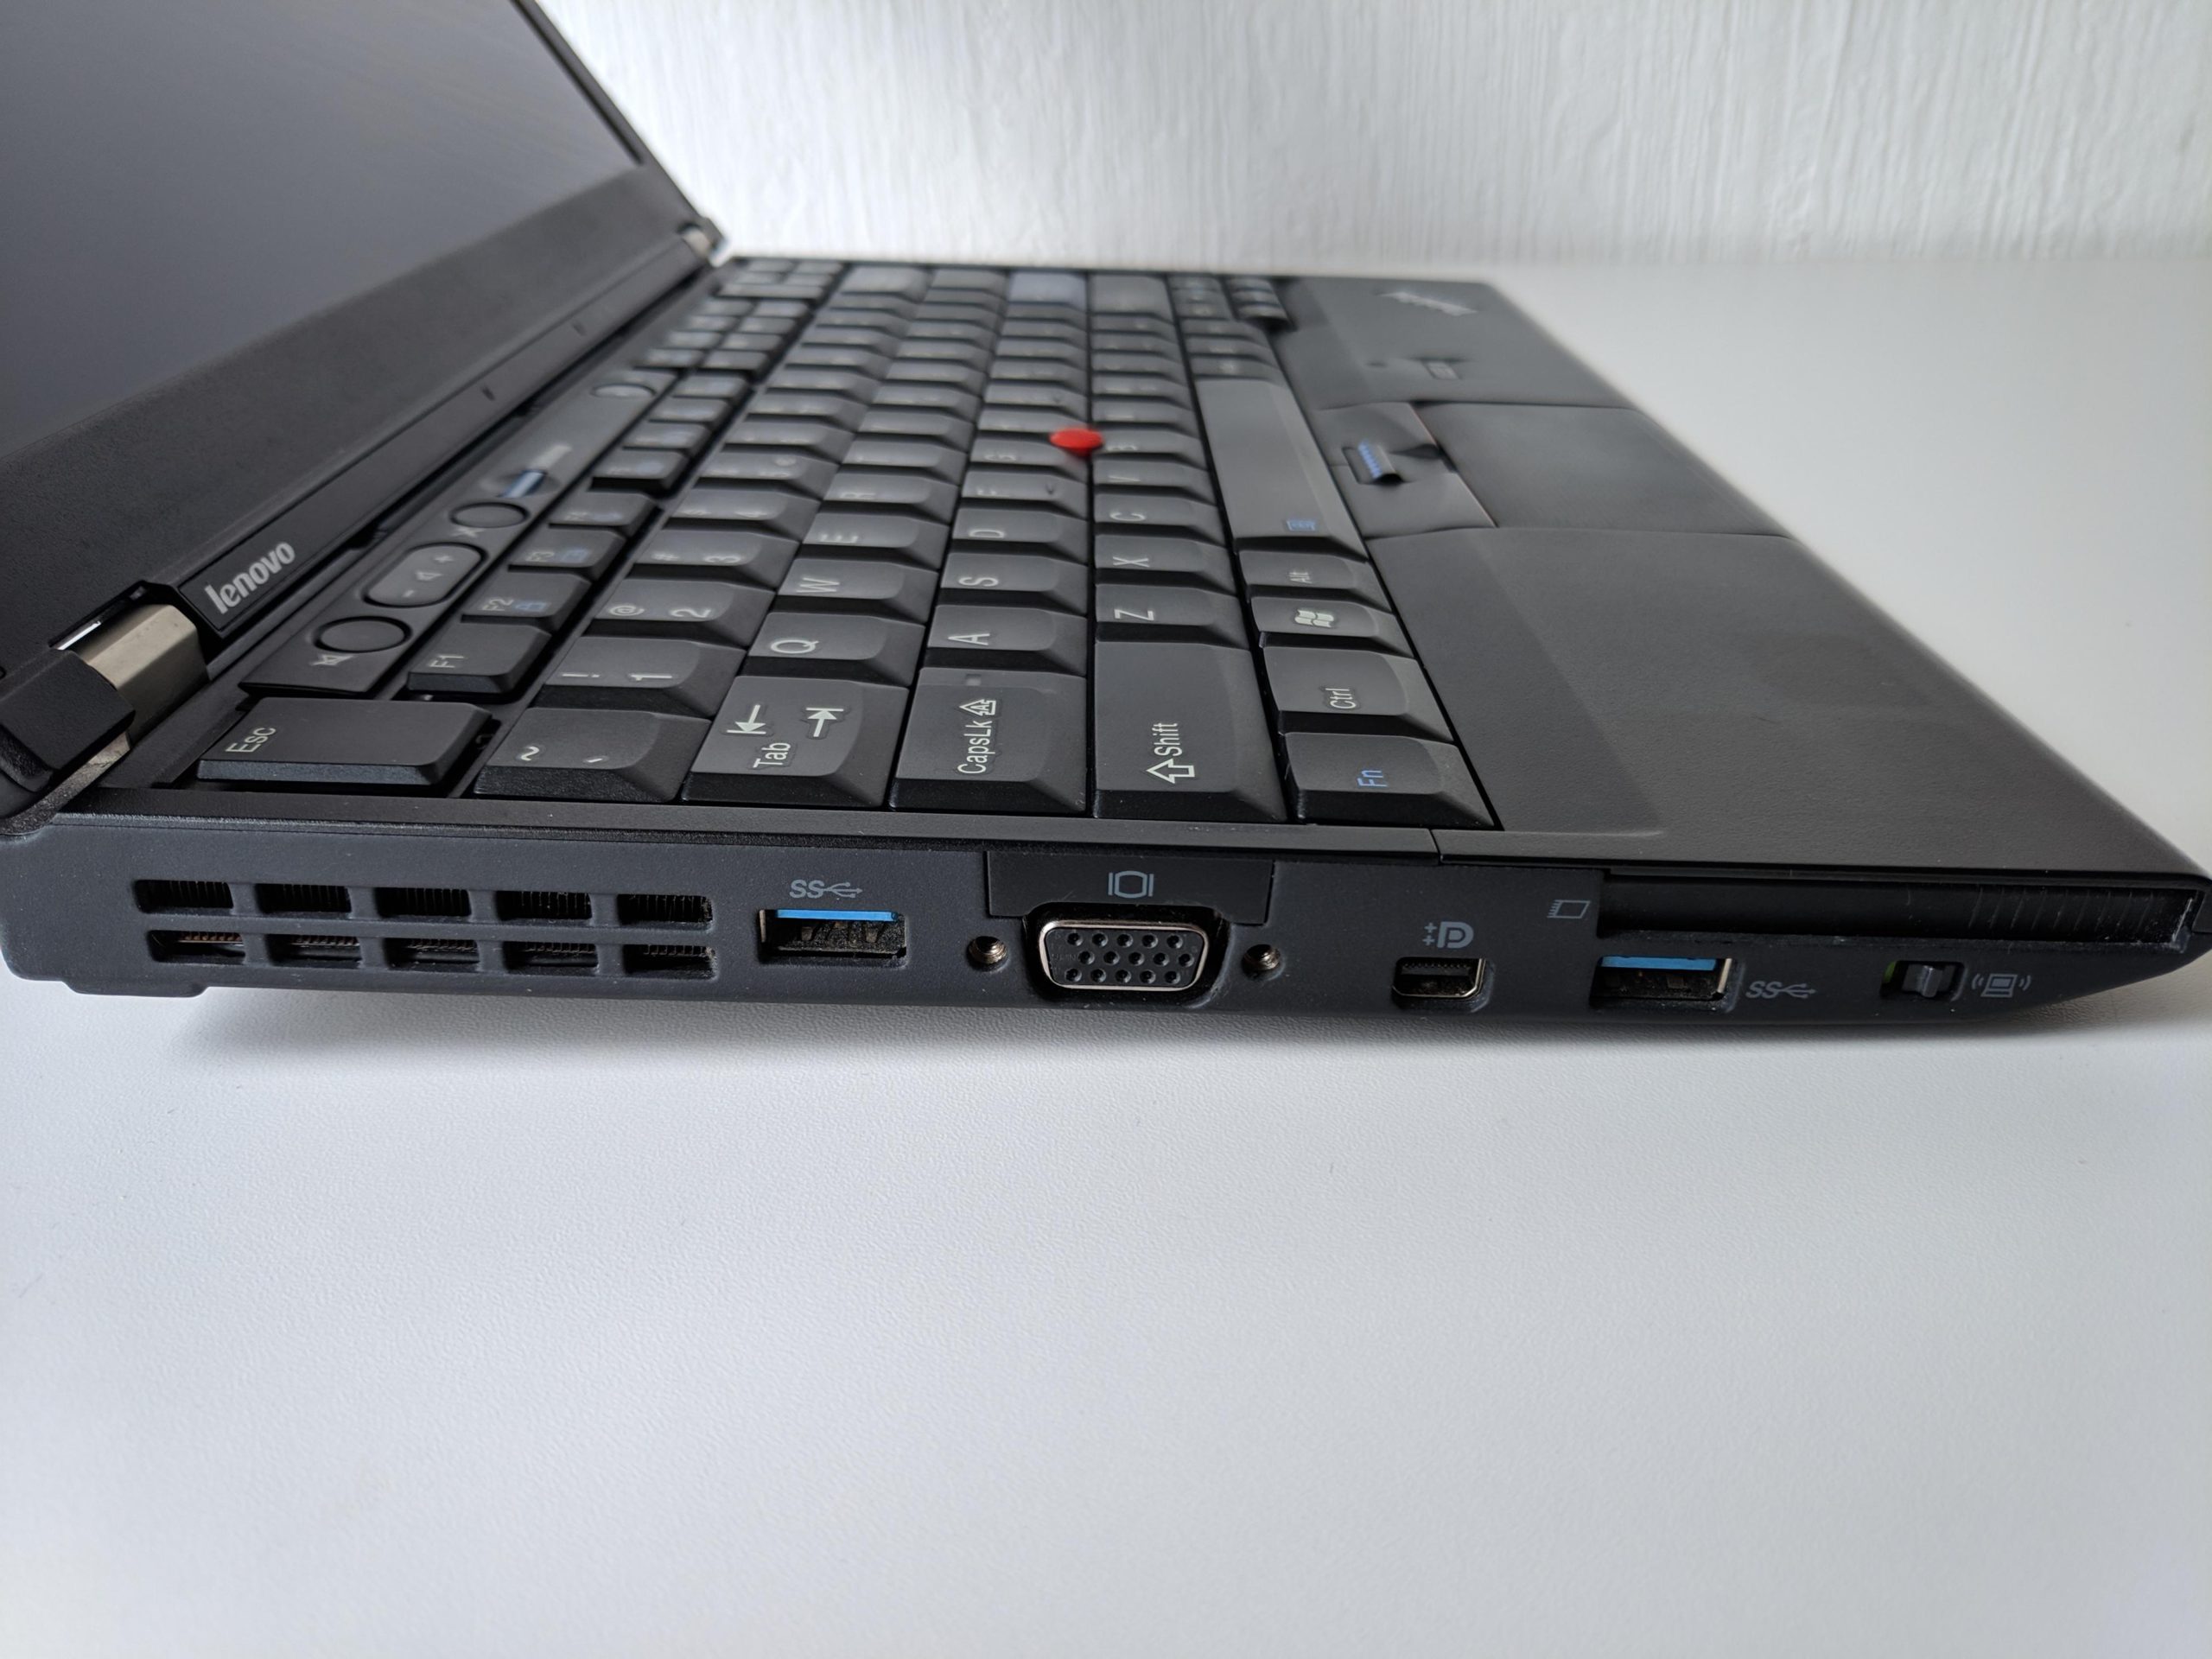 Buying A Lenovo Thinkpad X230 In 2020 - Abhishek Nagekar's Blog